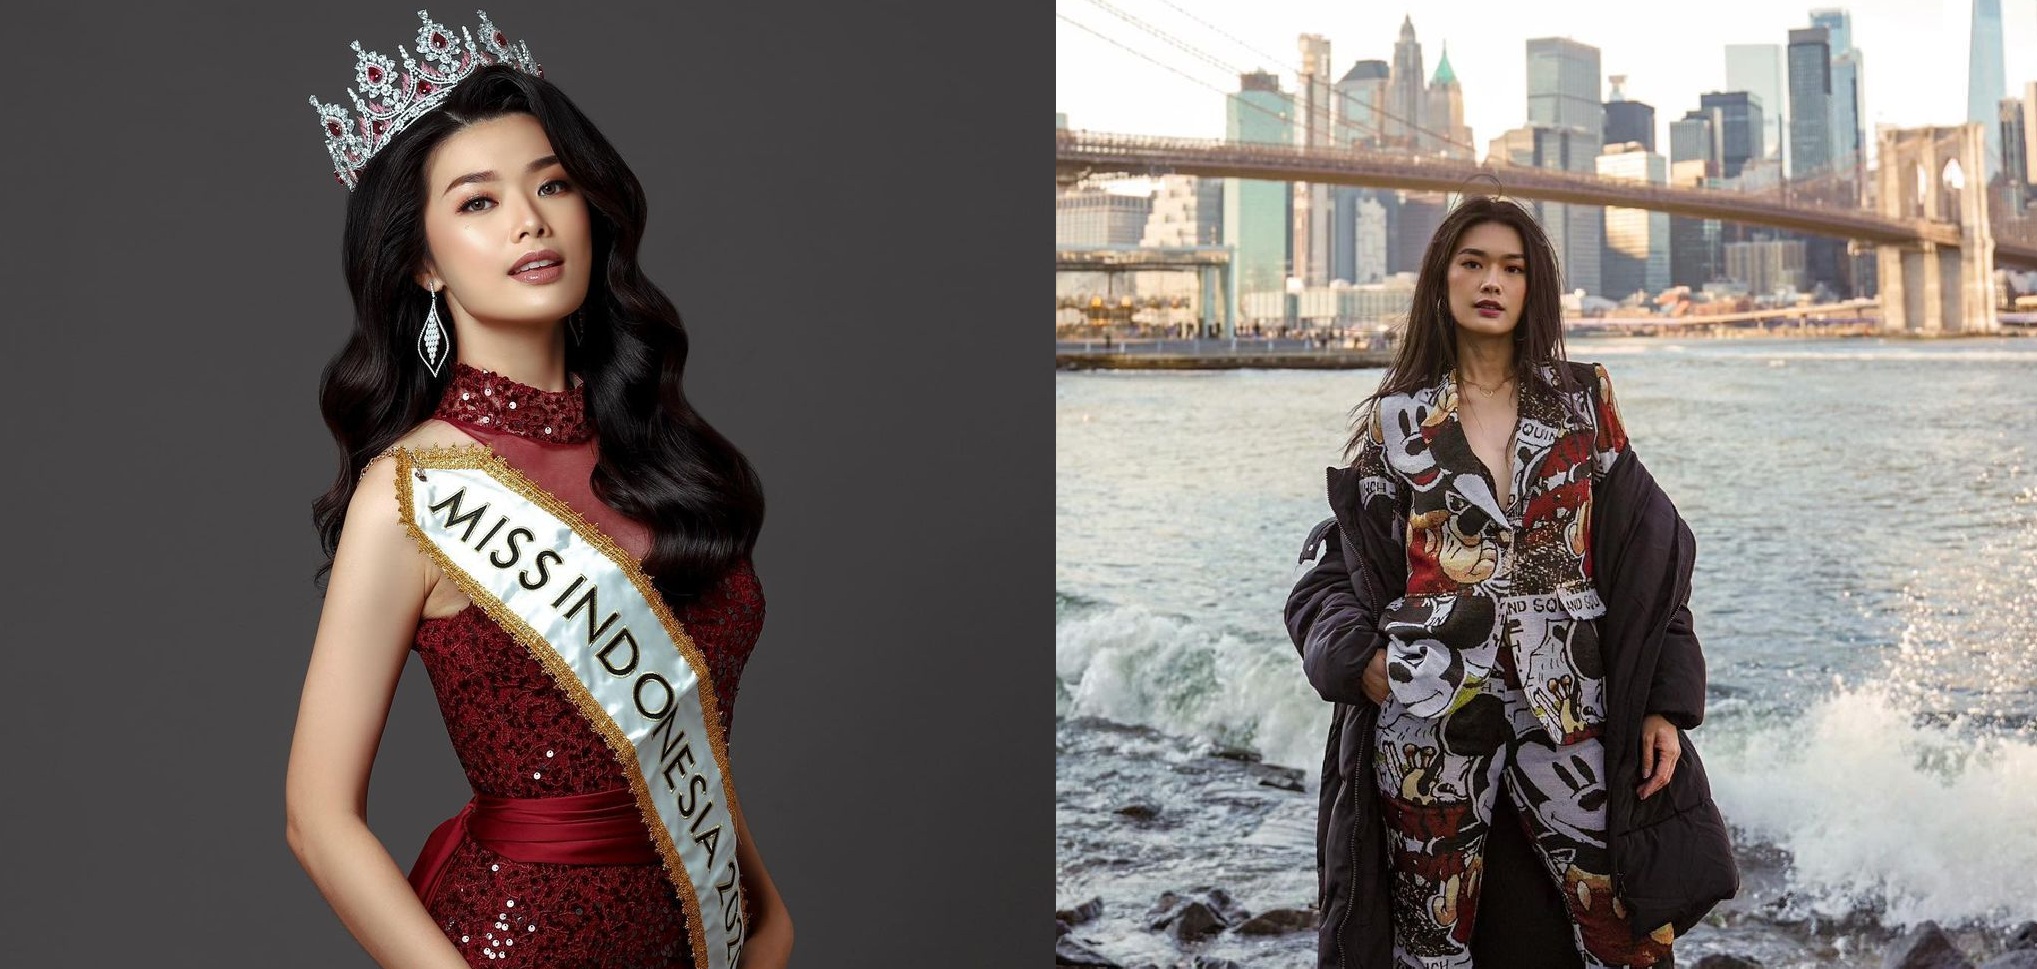 Profil dan Biodata Carla Yules: Umur, Agama, Instagram, Miss Indonesia 2020 kini Top 40 Miss World